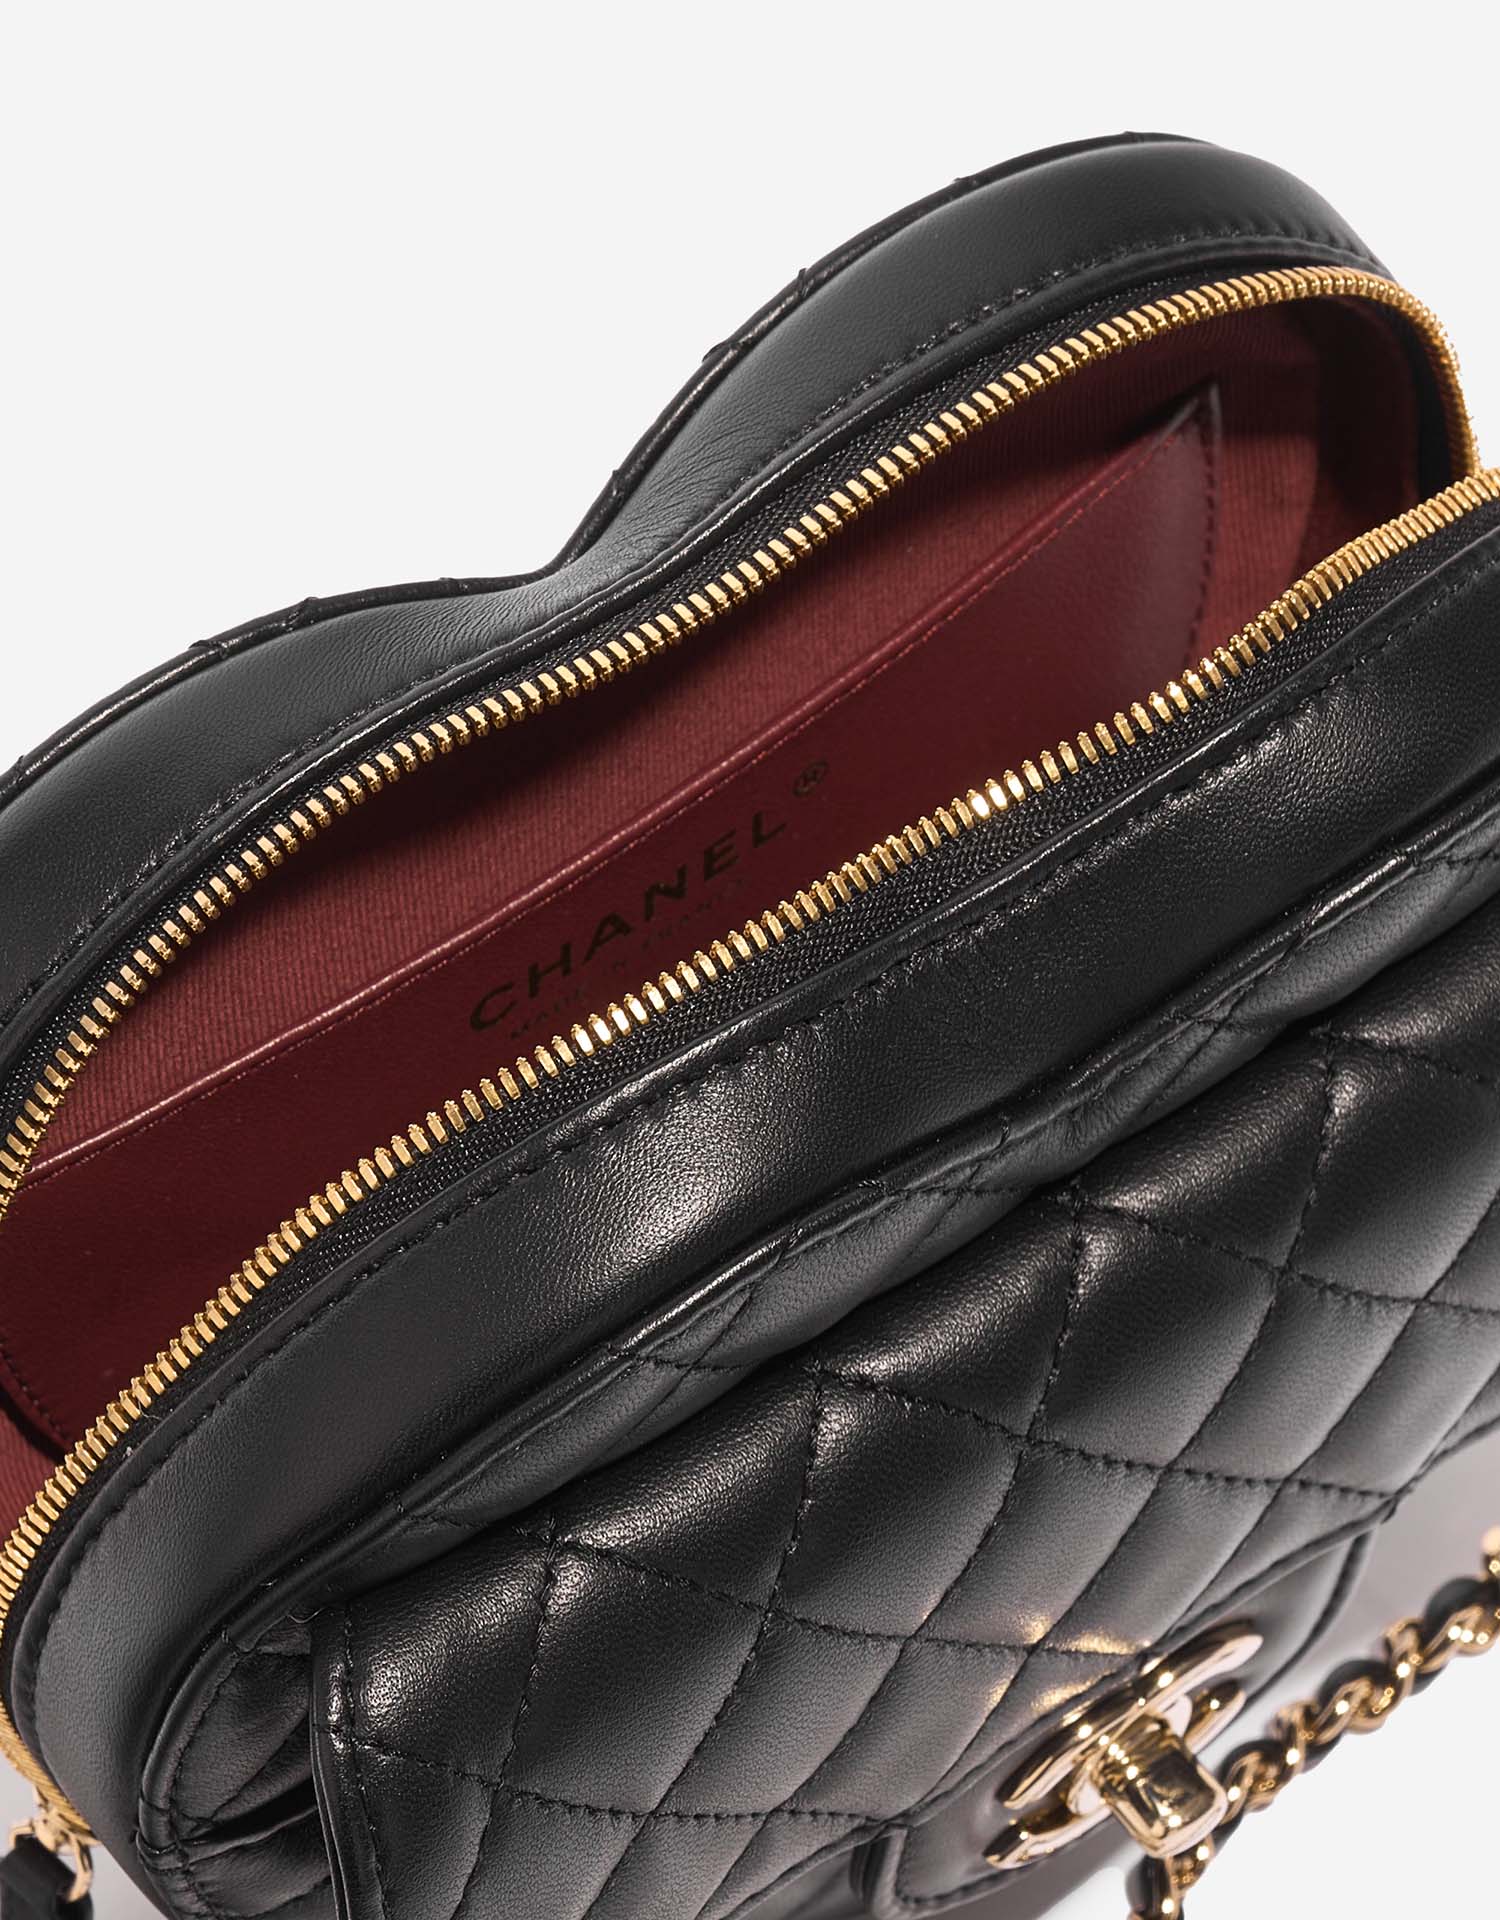 Chanel TimelessHeart Medium Black Inside | Verkaufen Sie Ihre Designer-Tasche auf Saclab.com